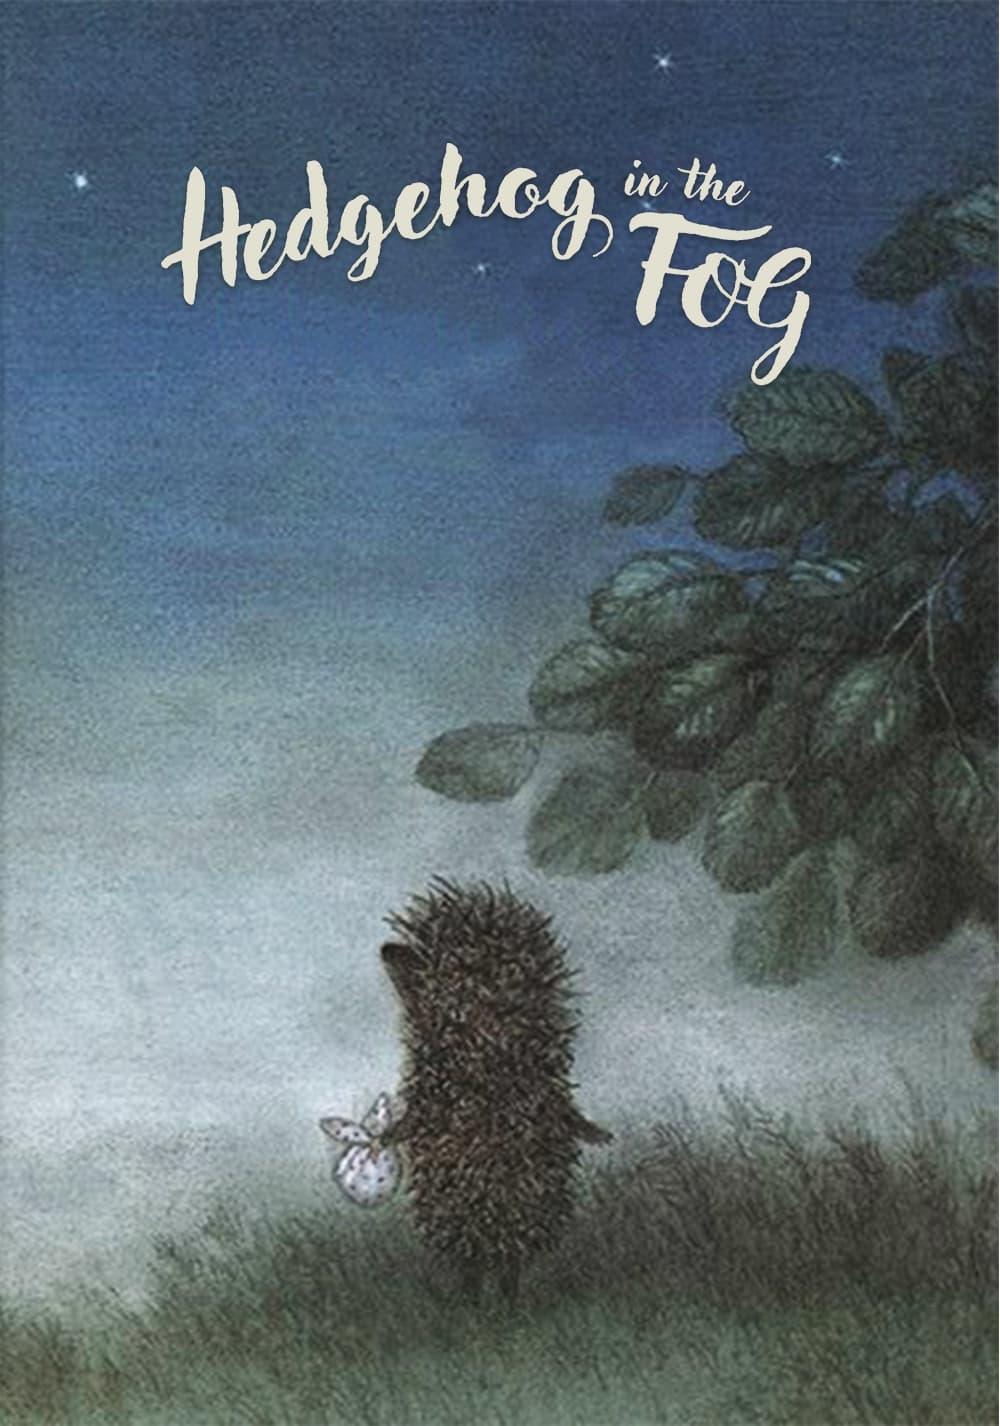 Hedgehog in the Fog poster